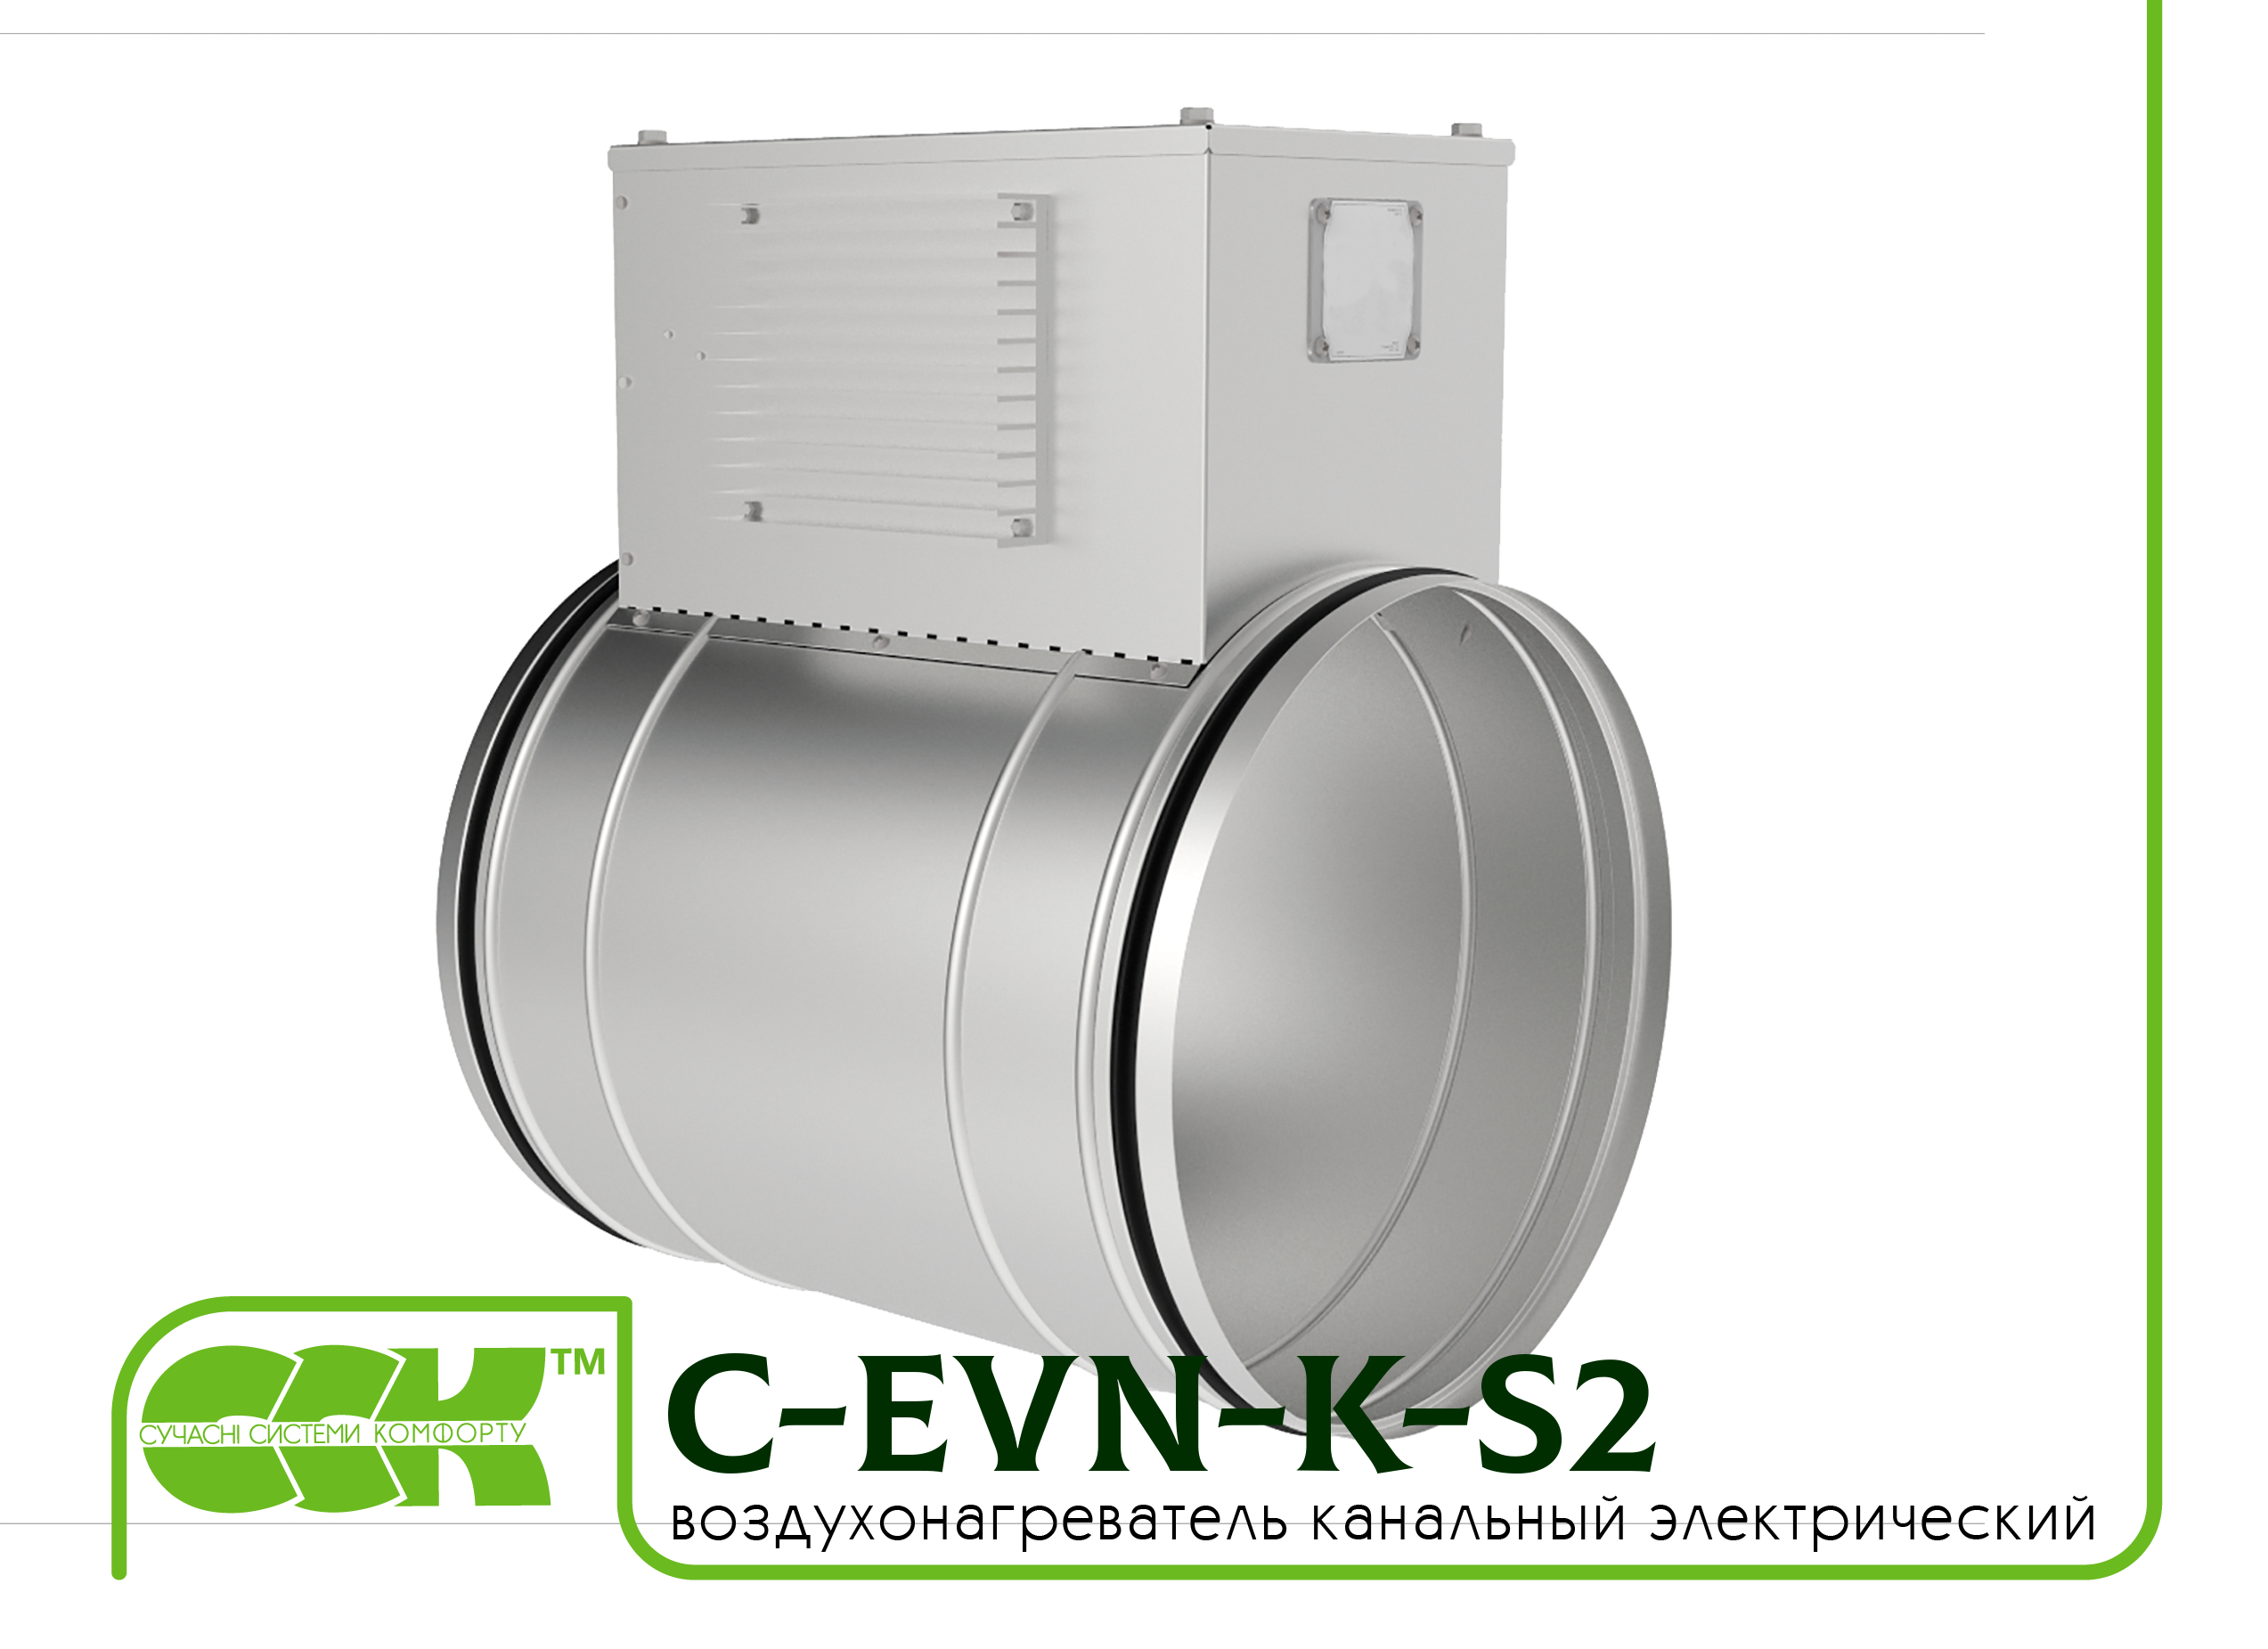 Воздухонагреватель канальный электрический для круглых каналов C-EVN-K-S2-315-6,0